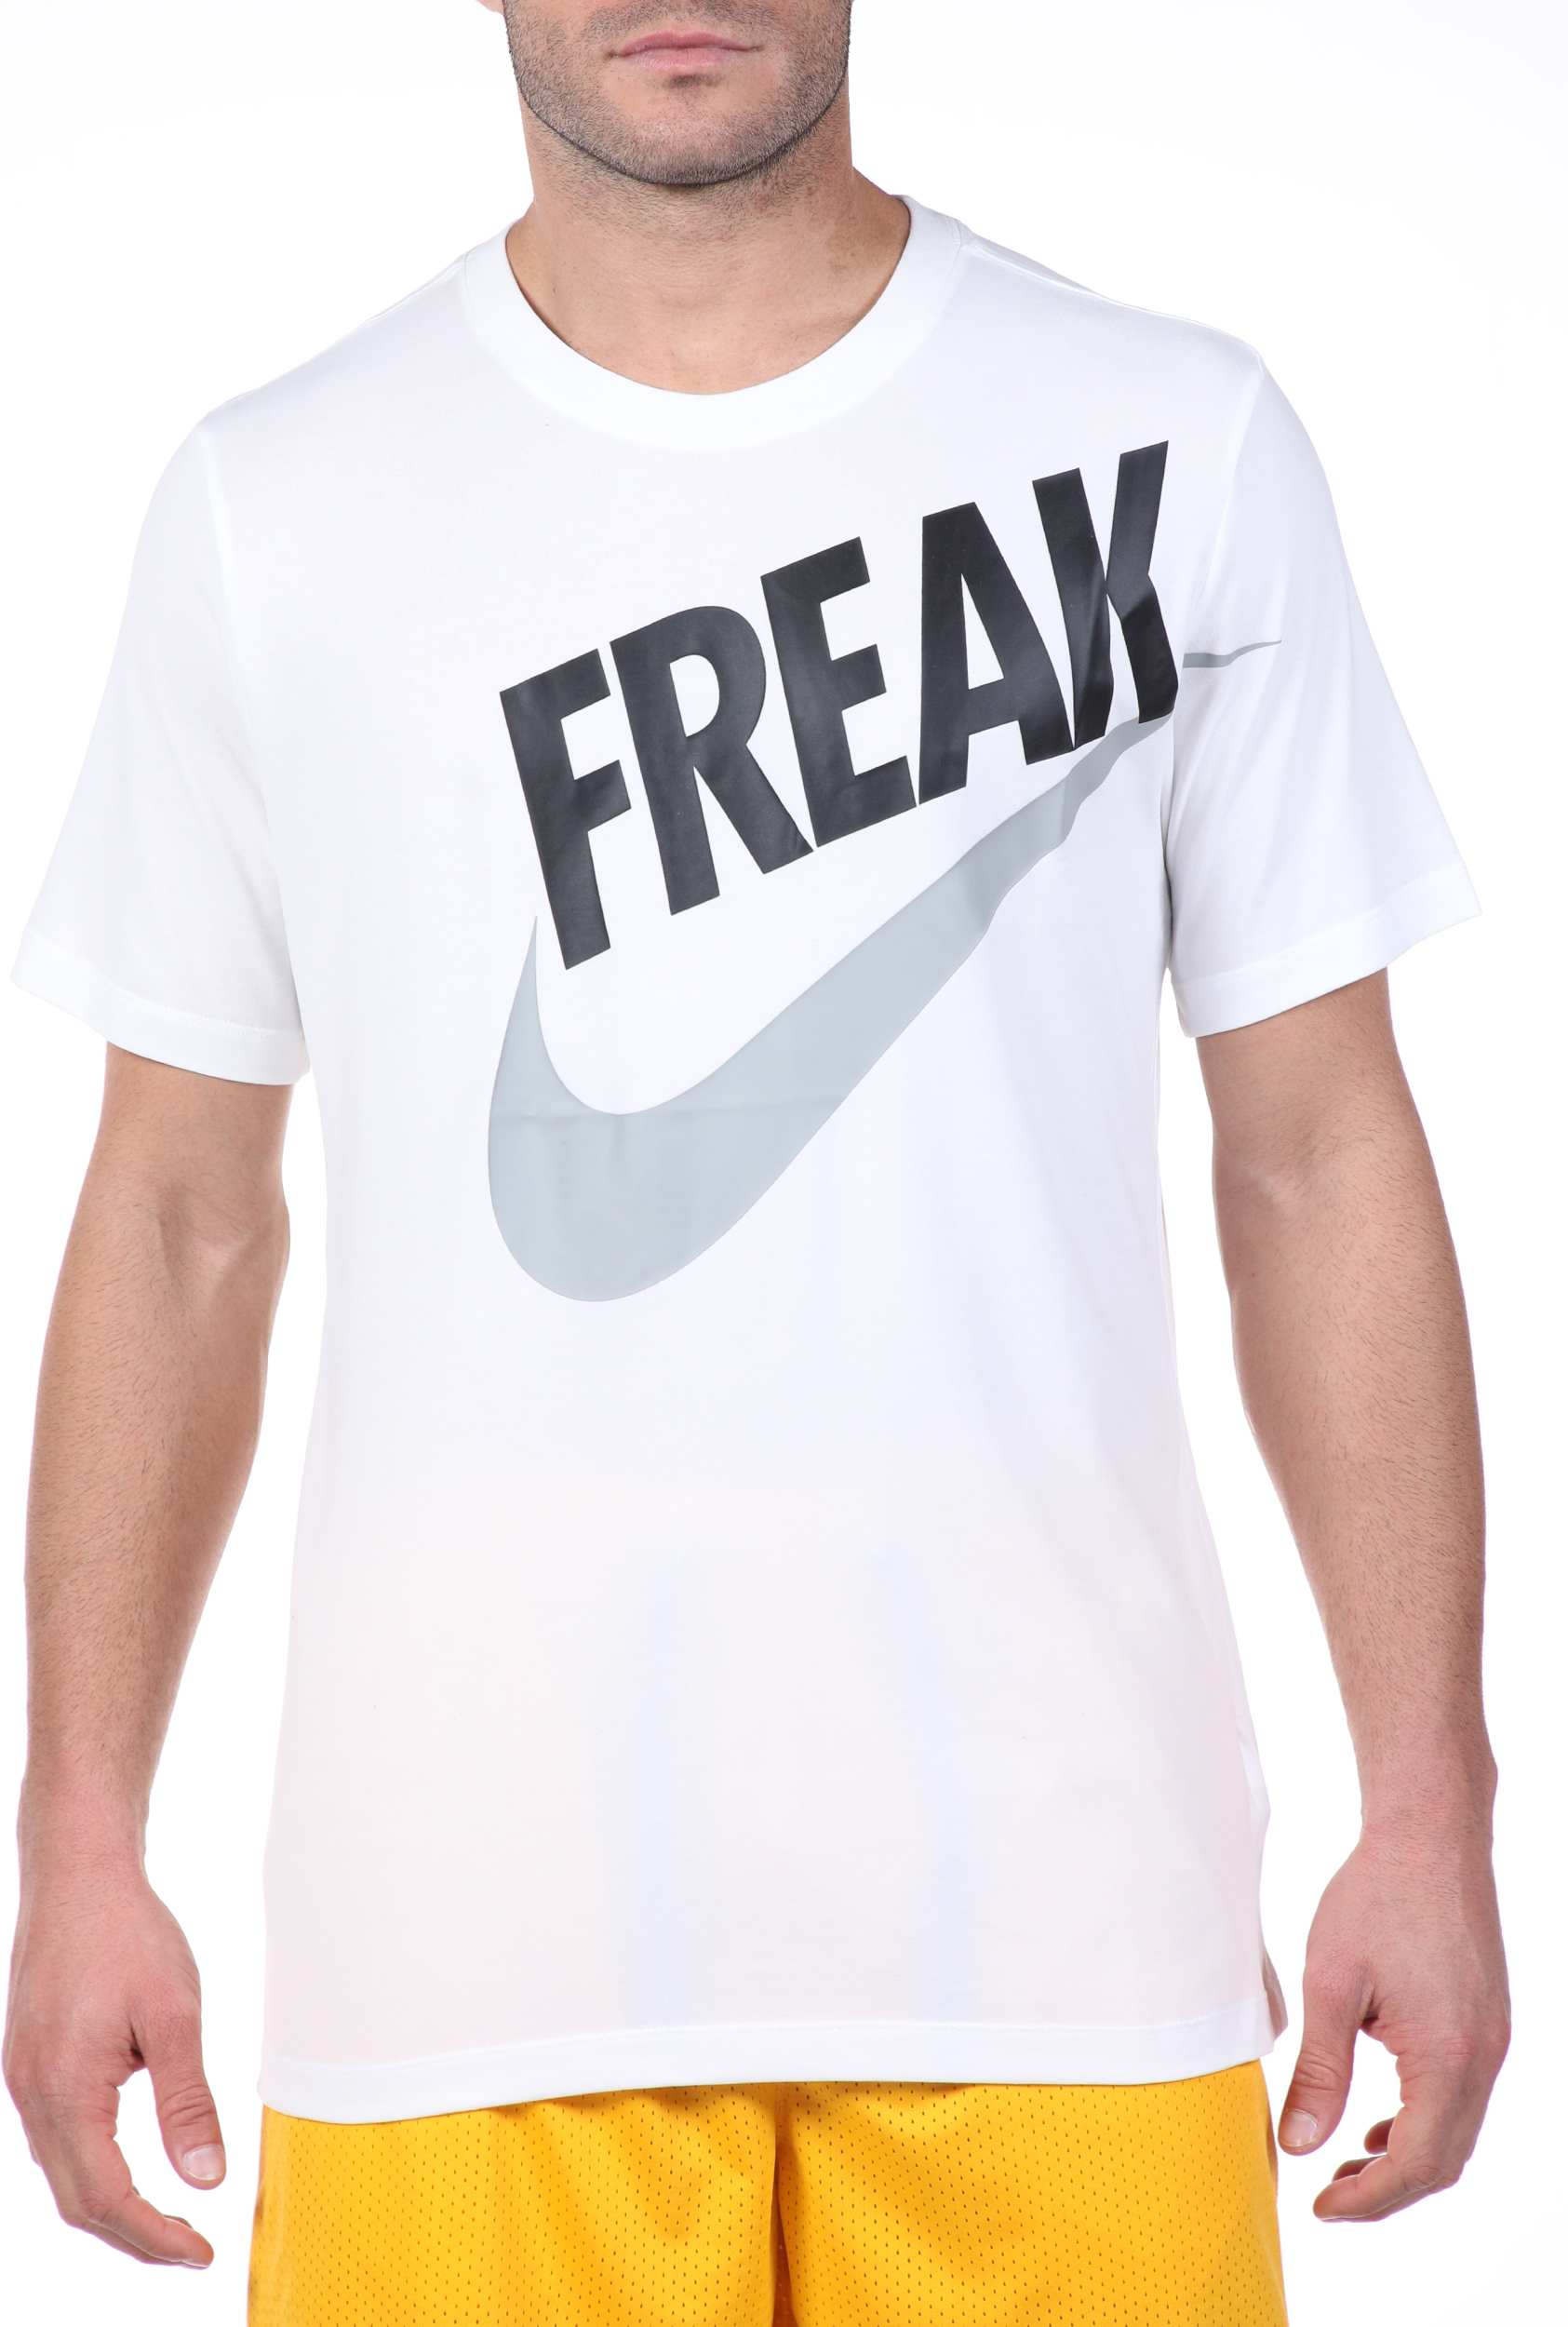 NIKE - Ανδρική μπλούζα NIKE GA M NK DRY TEE FREAK λευκή Ανδρικά/Ρούχα/Αθλητικά/T-shirt